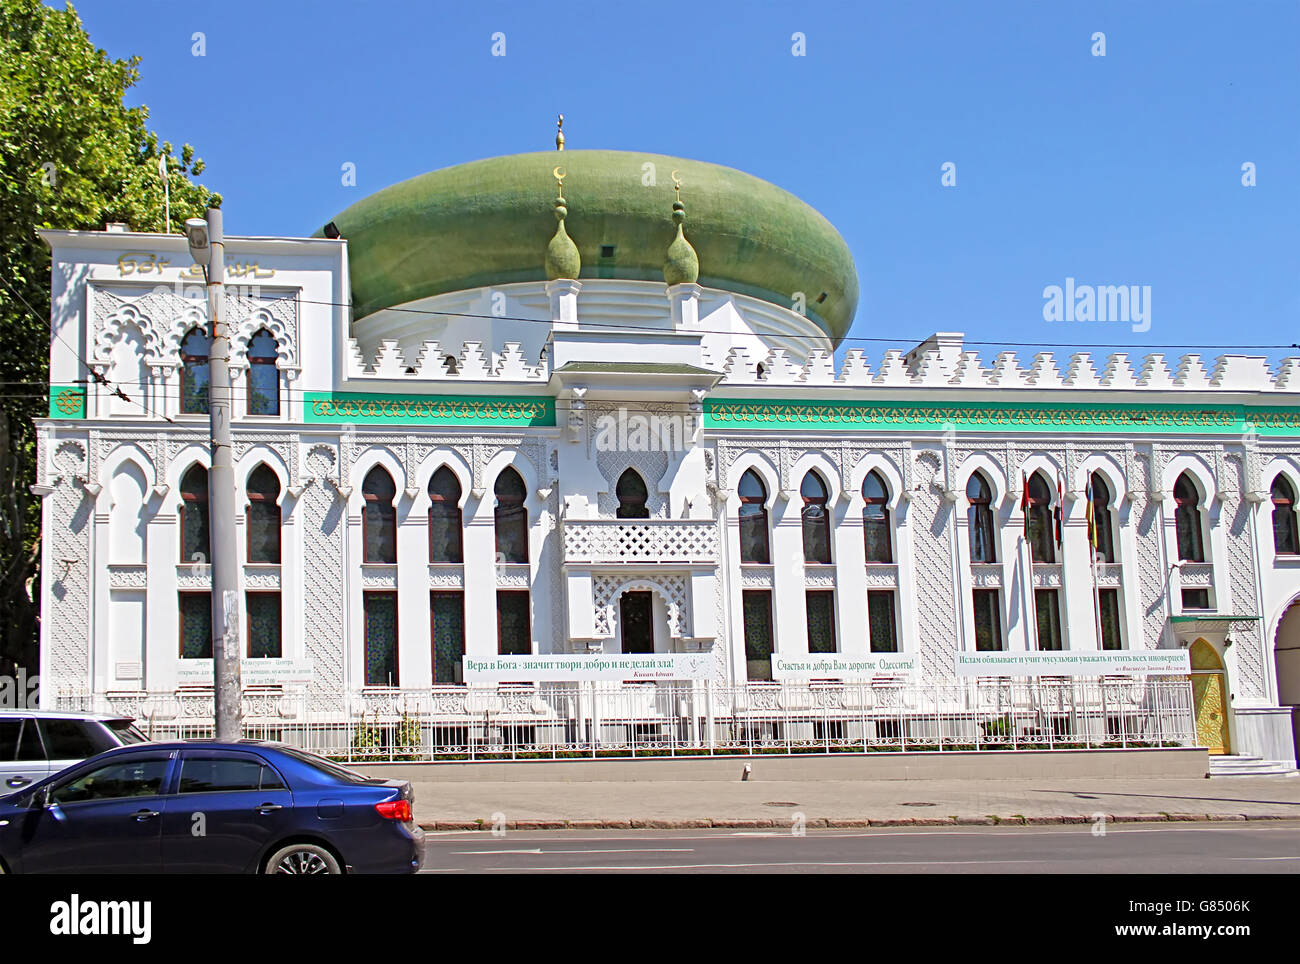 ODESSA, UKRAINE - JULY 21, 2012: The Al-Salam Mosque and Arabian Cultural Center are located in Odessa, Ukraine Stock Photo